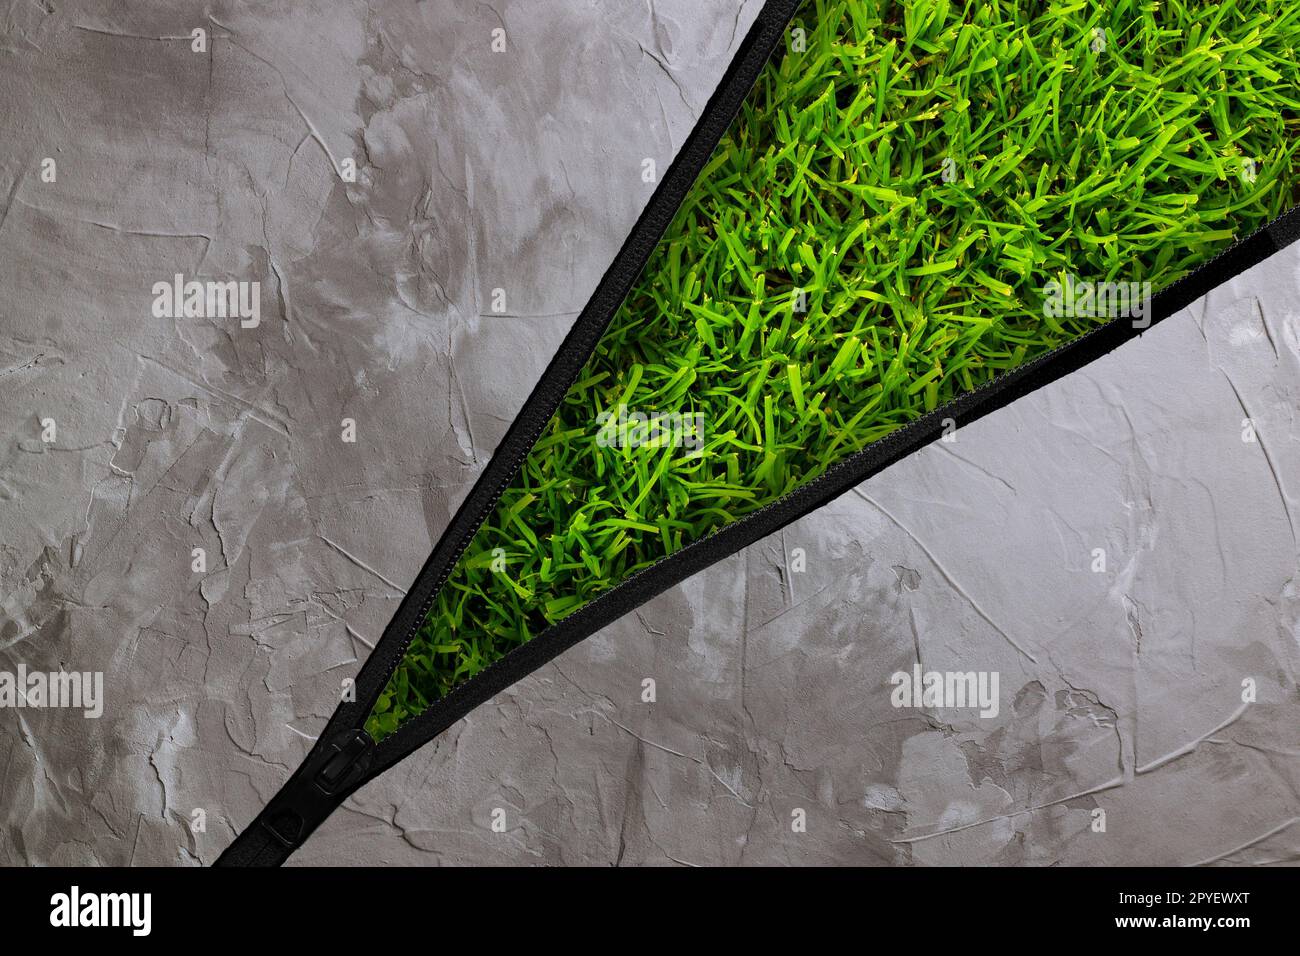 Gestreckter Reißverschluss mit grauem Betonhintergrund und grünem Gras darunter. Ökologie und Naturschutzkonzept Stockfoto